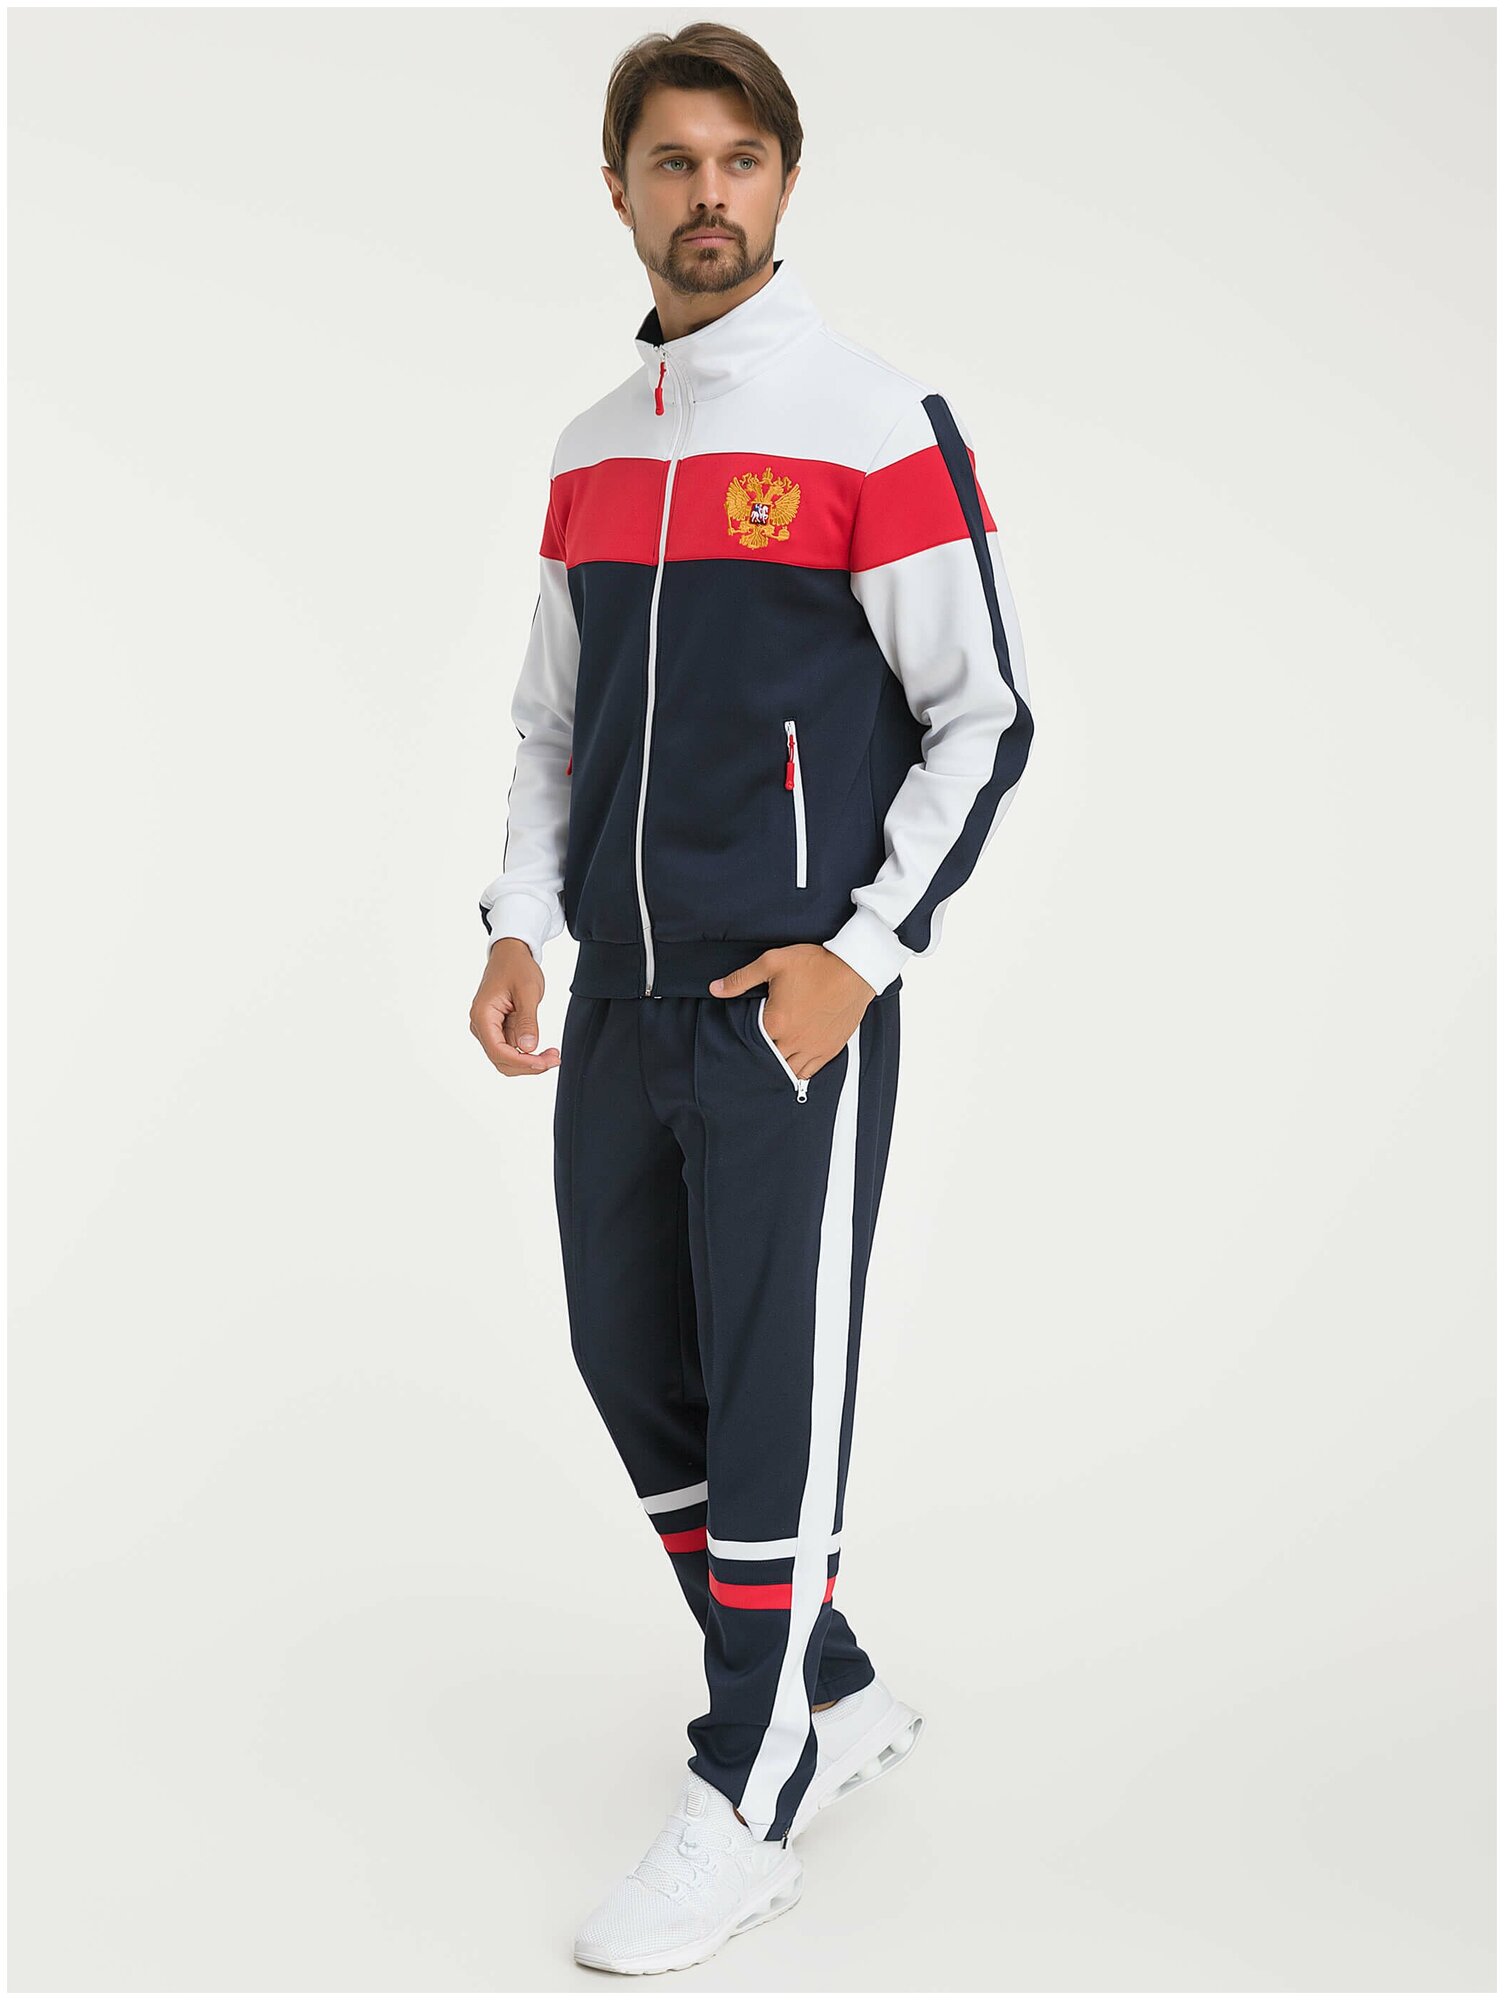 Костюм Фокс Спорт, олимпийка и брюки, силуэт прямой, карманы, размер 2XL, синий — купить в интернет-магазине по низкой цене на Яндекс Маркете